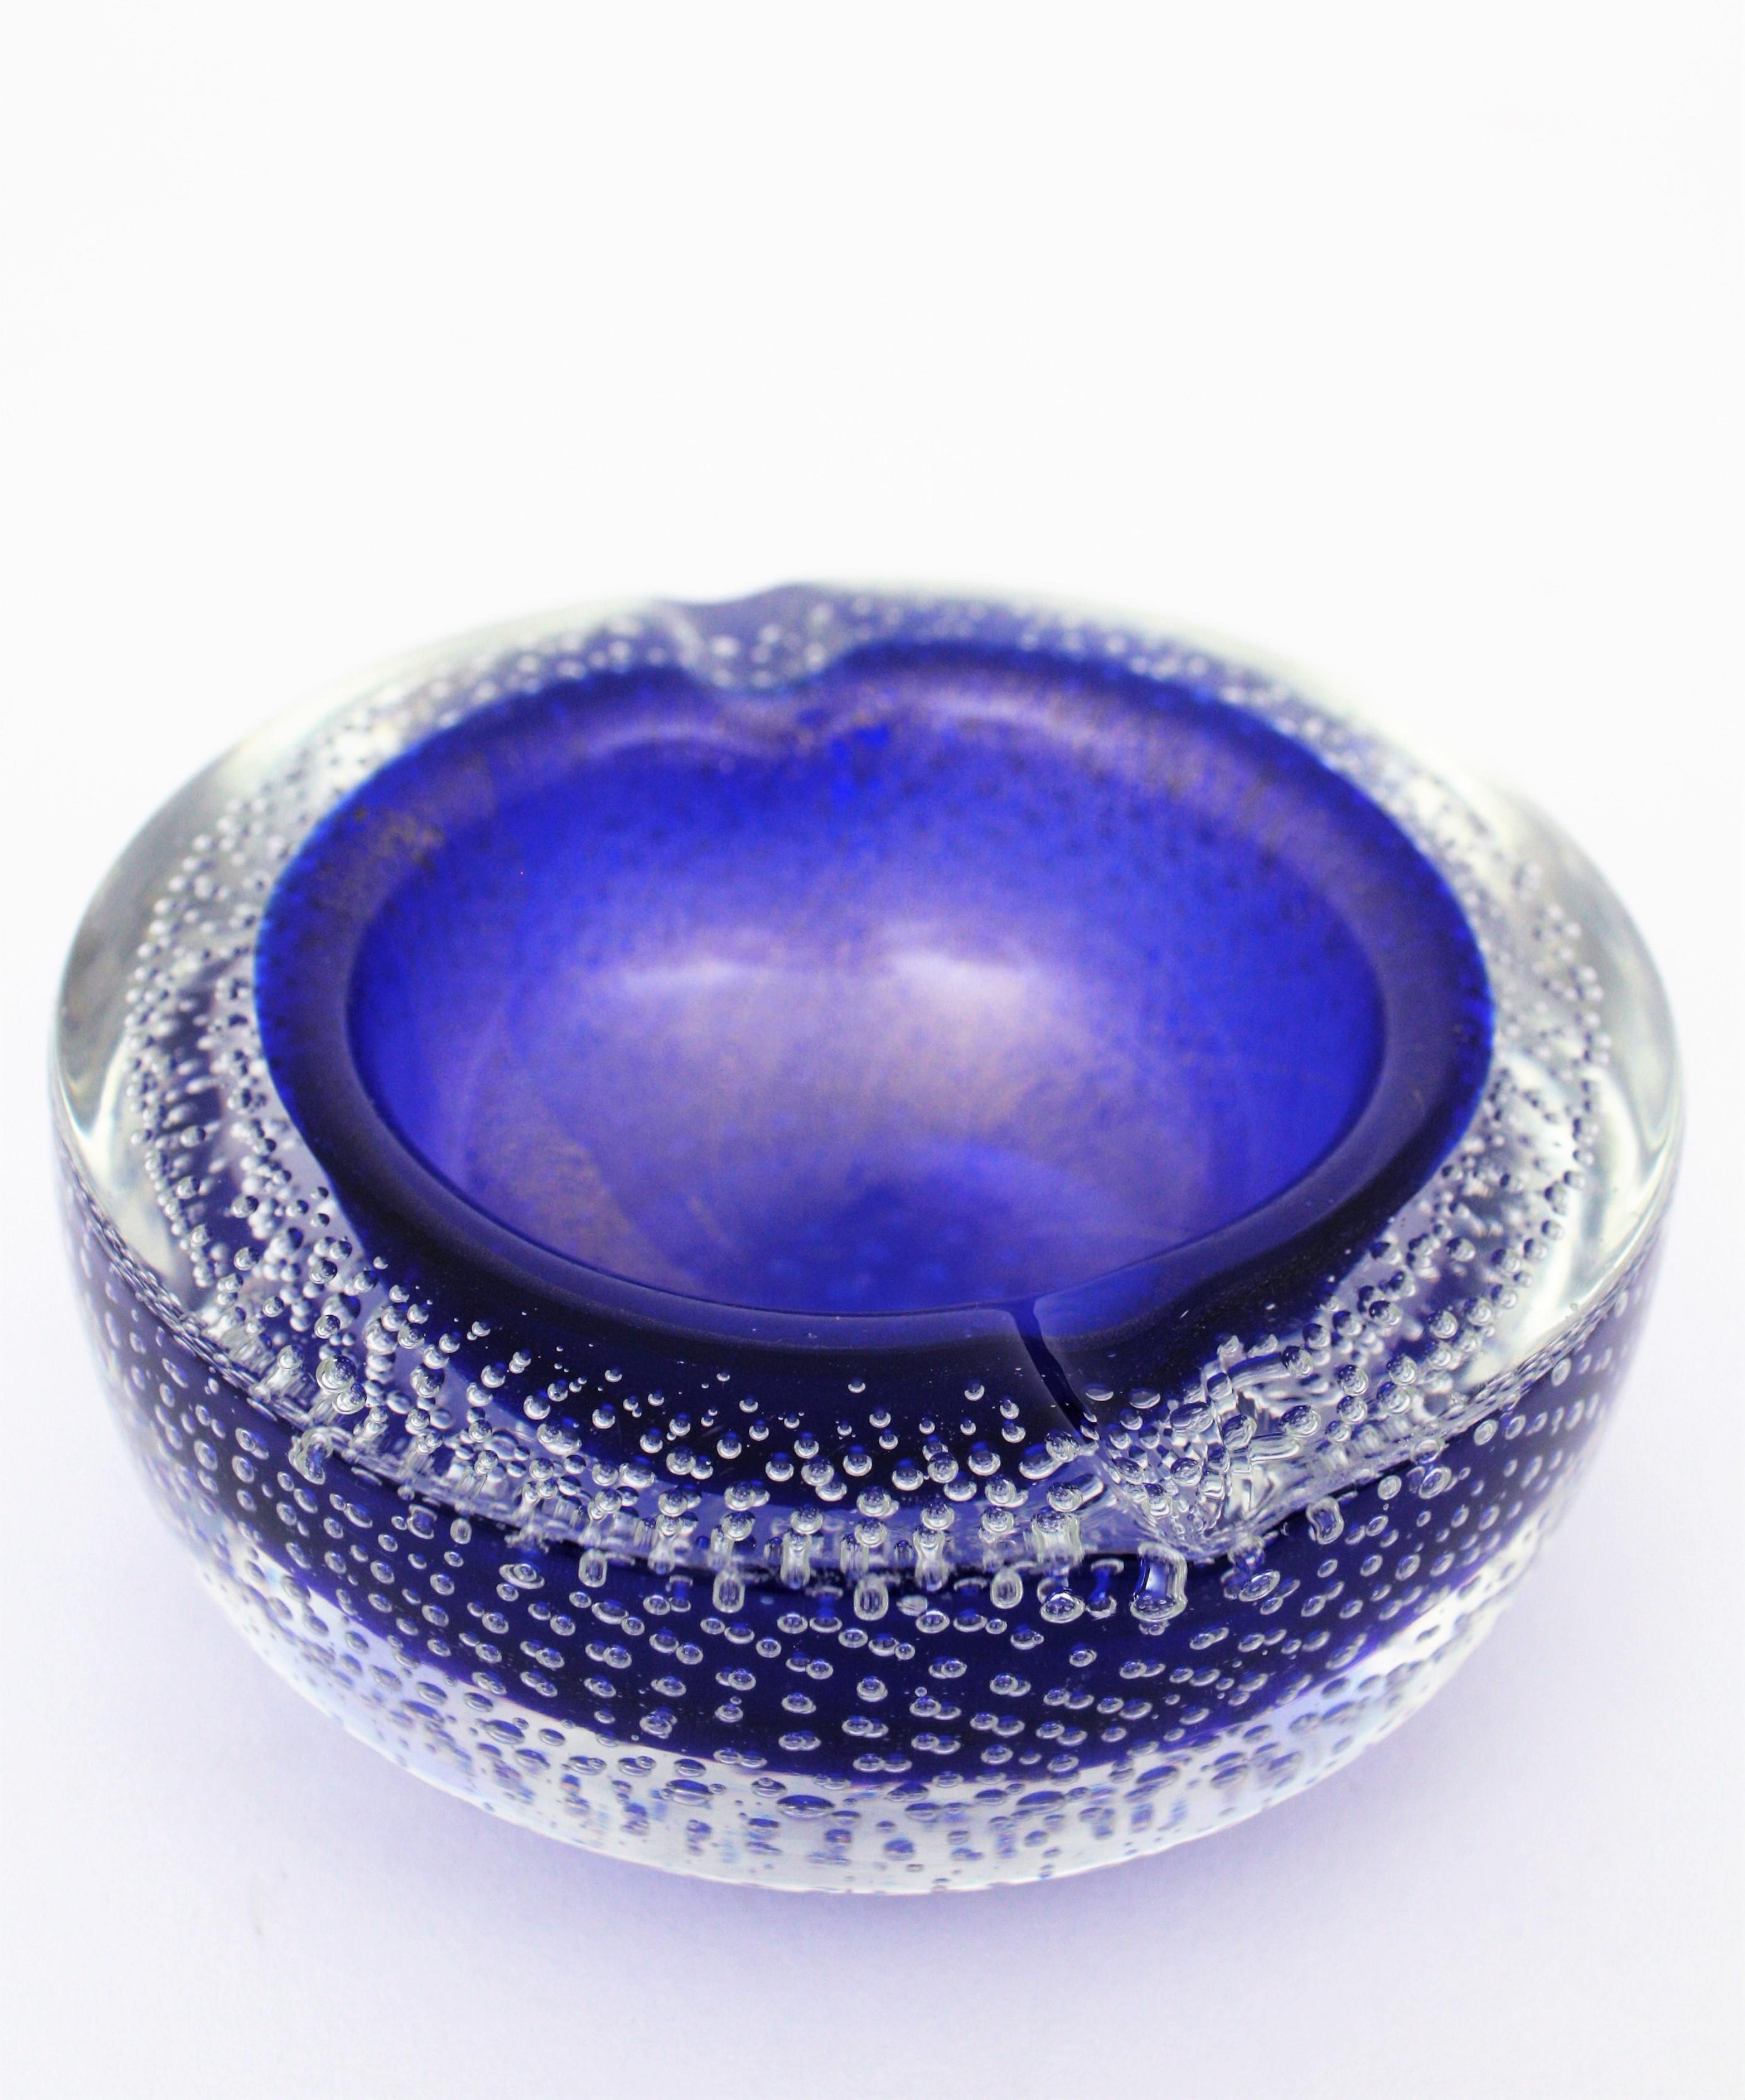 Seguso Vetri d'Arte Murano Bullicante Blue Art Glass Bowl / Ashtray For Sale 1